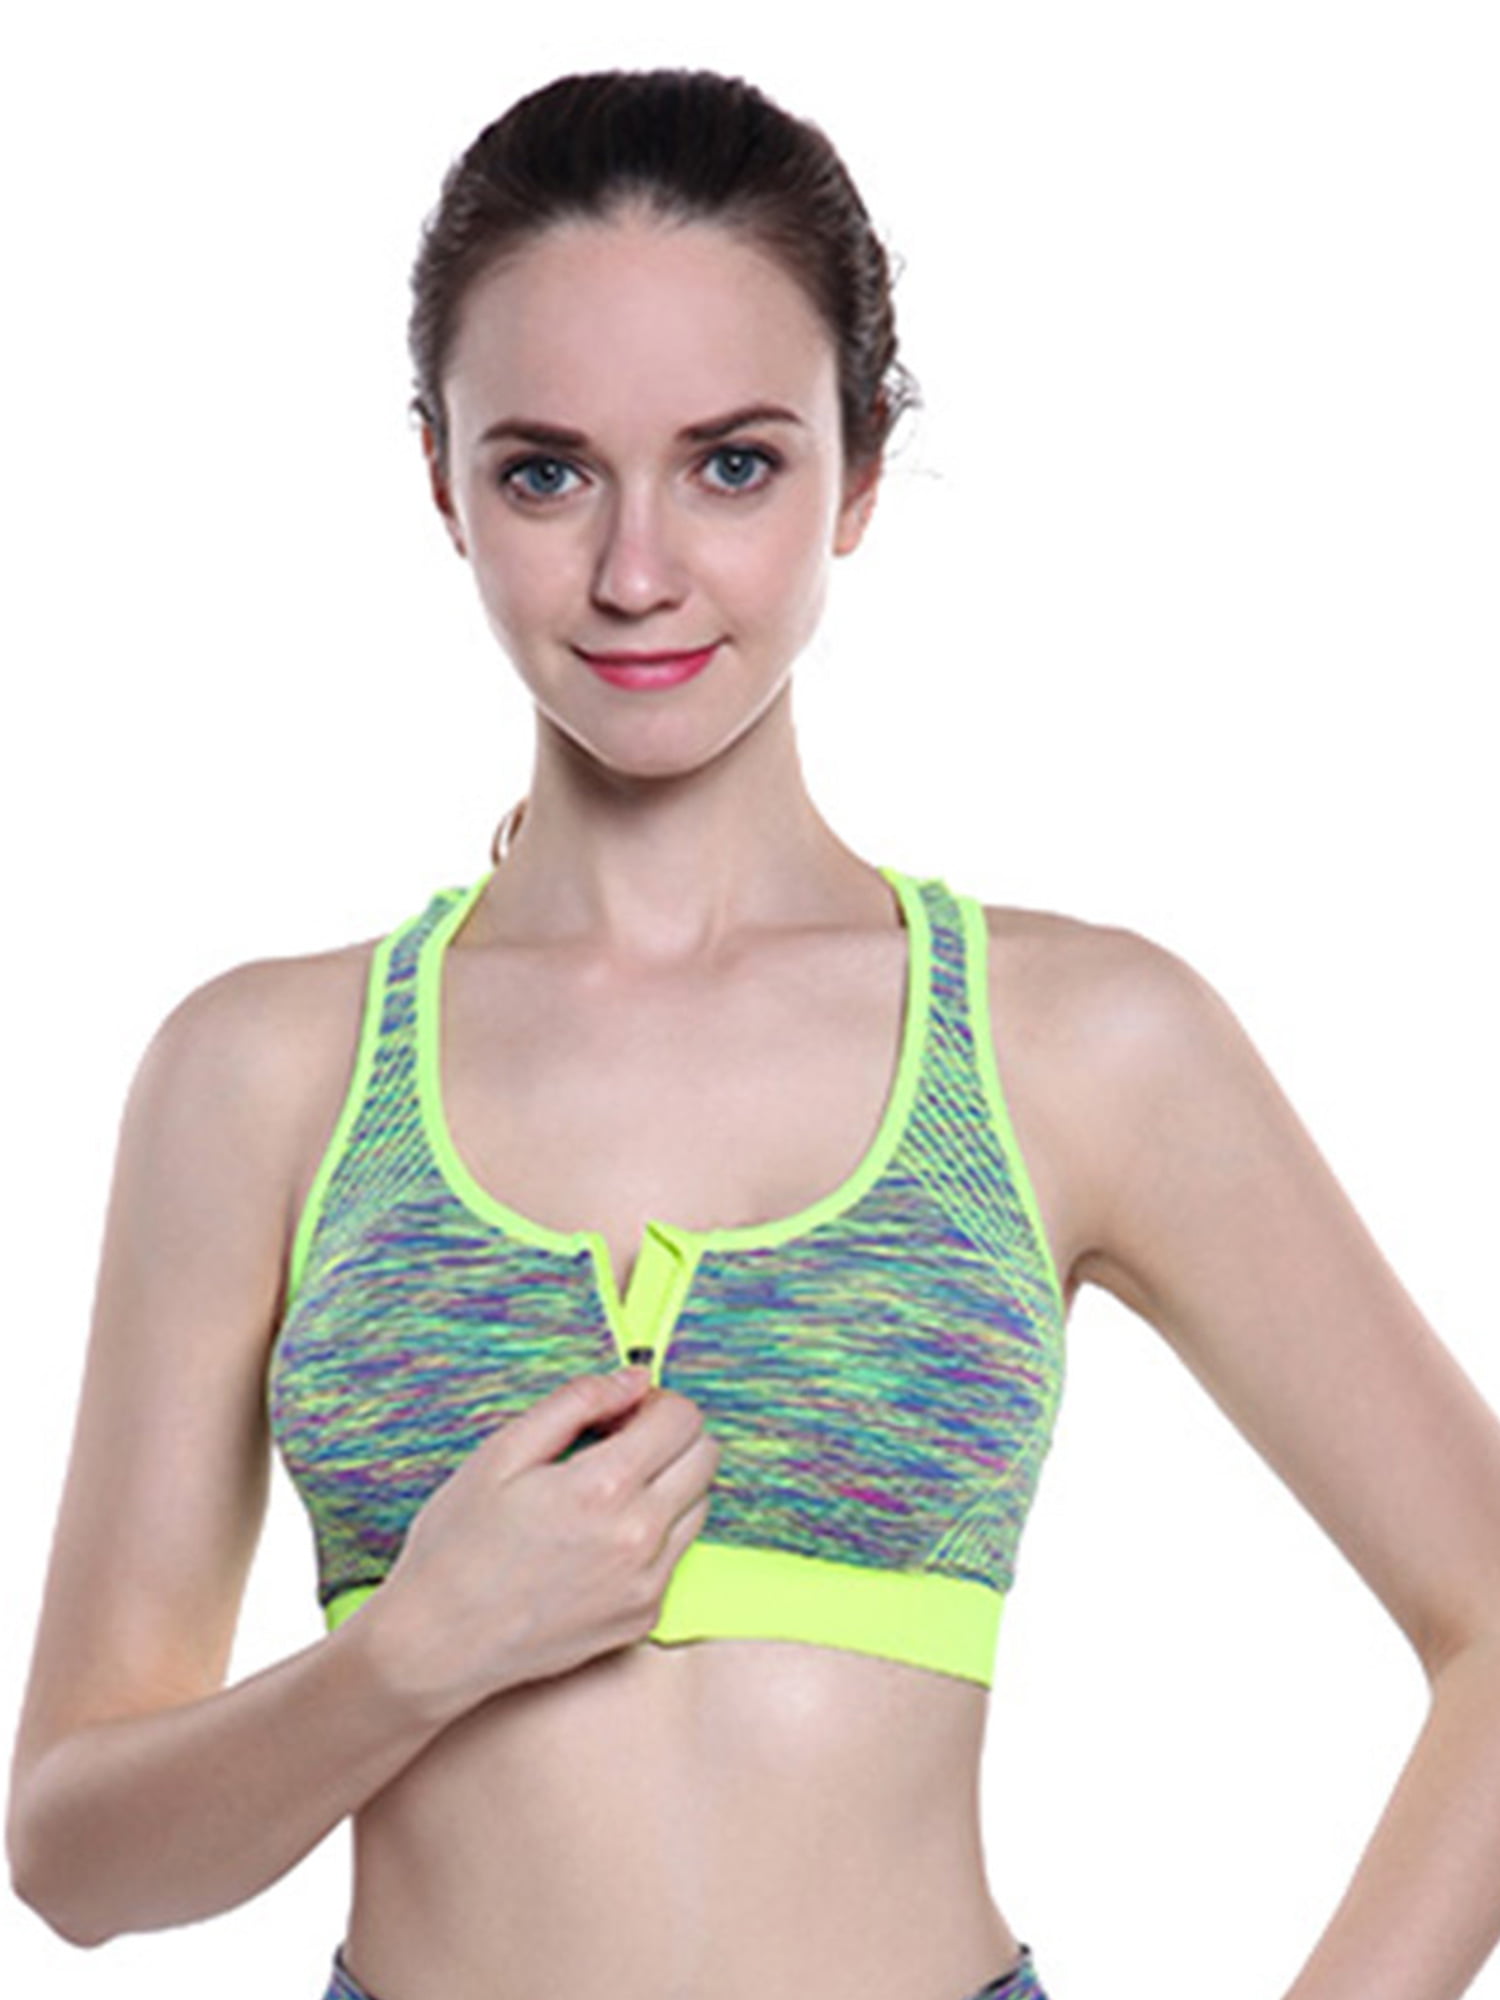 Details about   sports bra crop top fitness women sportswear feminine sport top bras for 